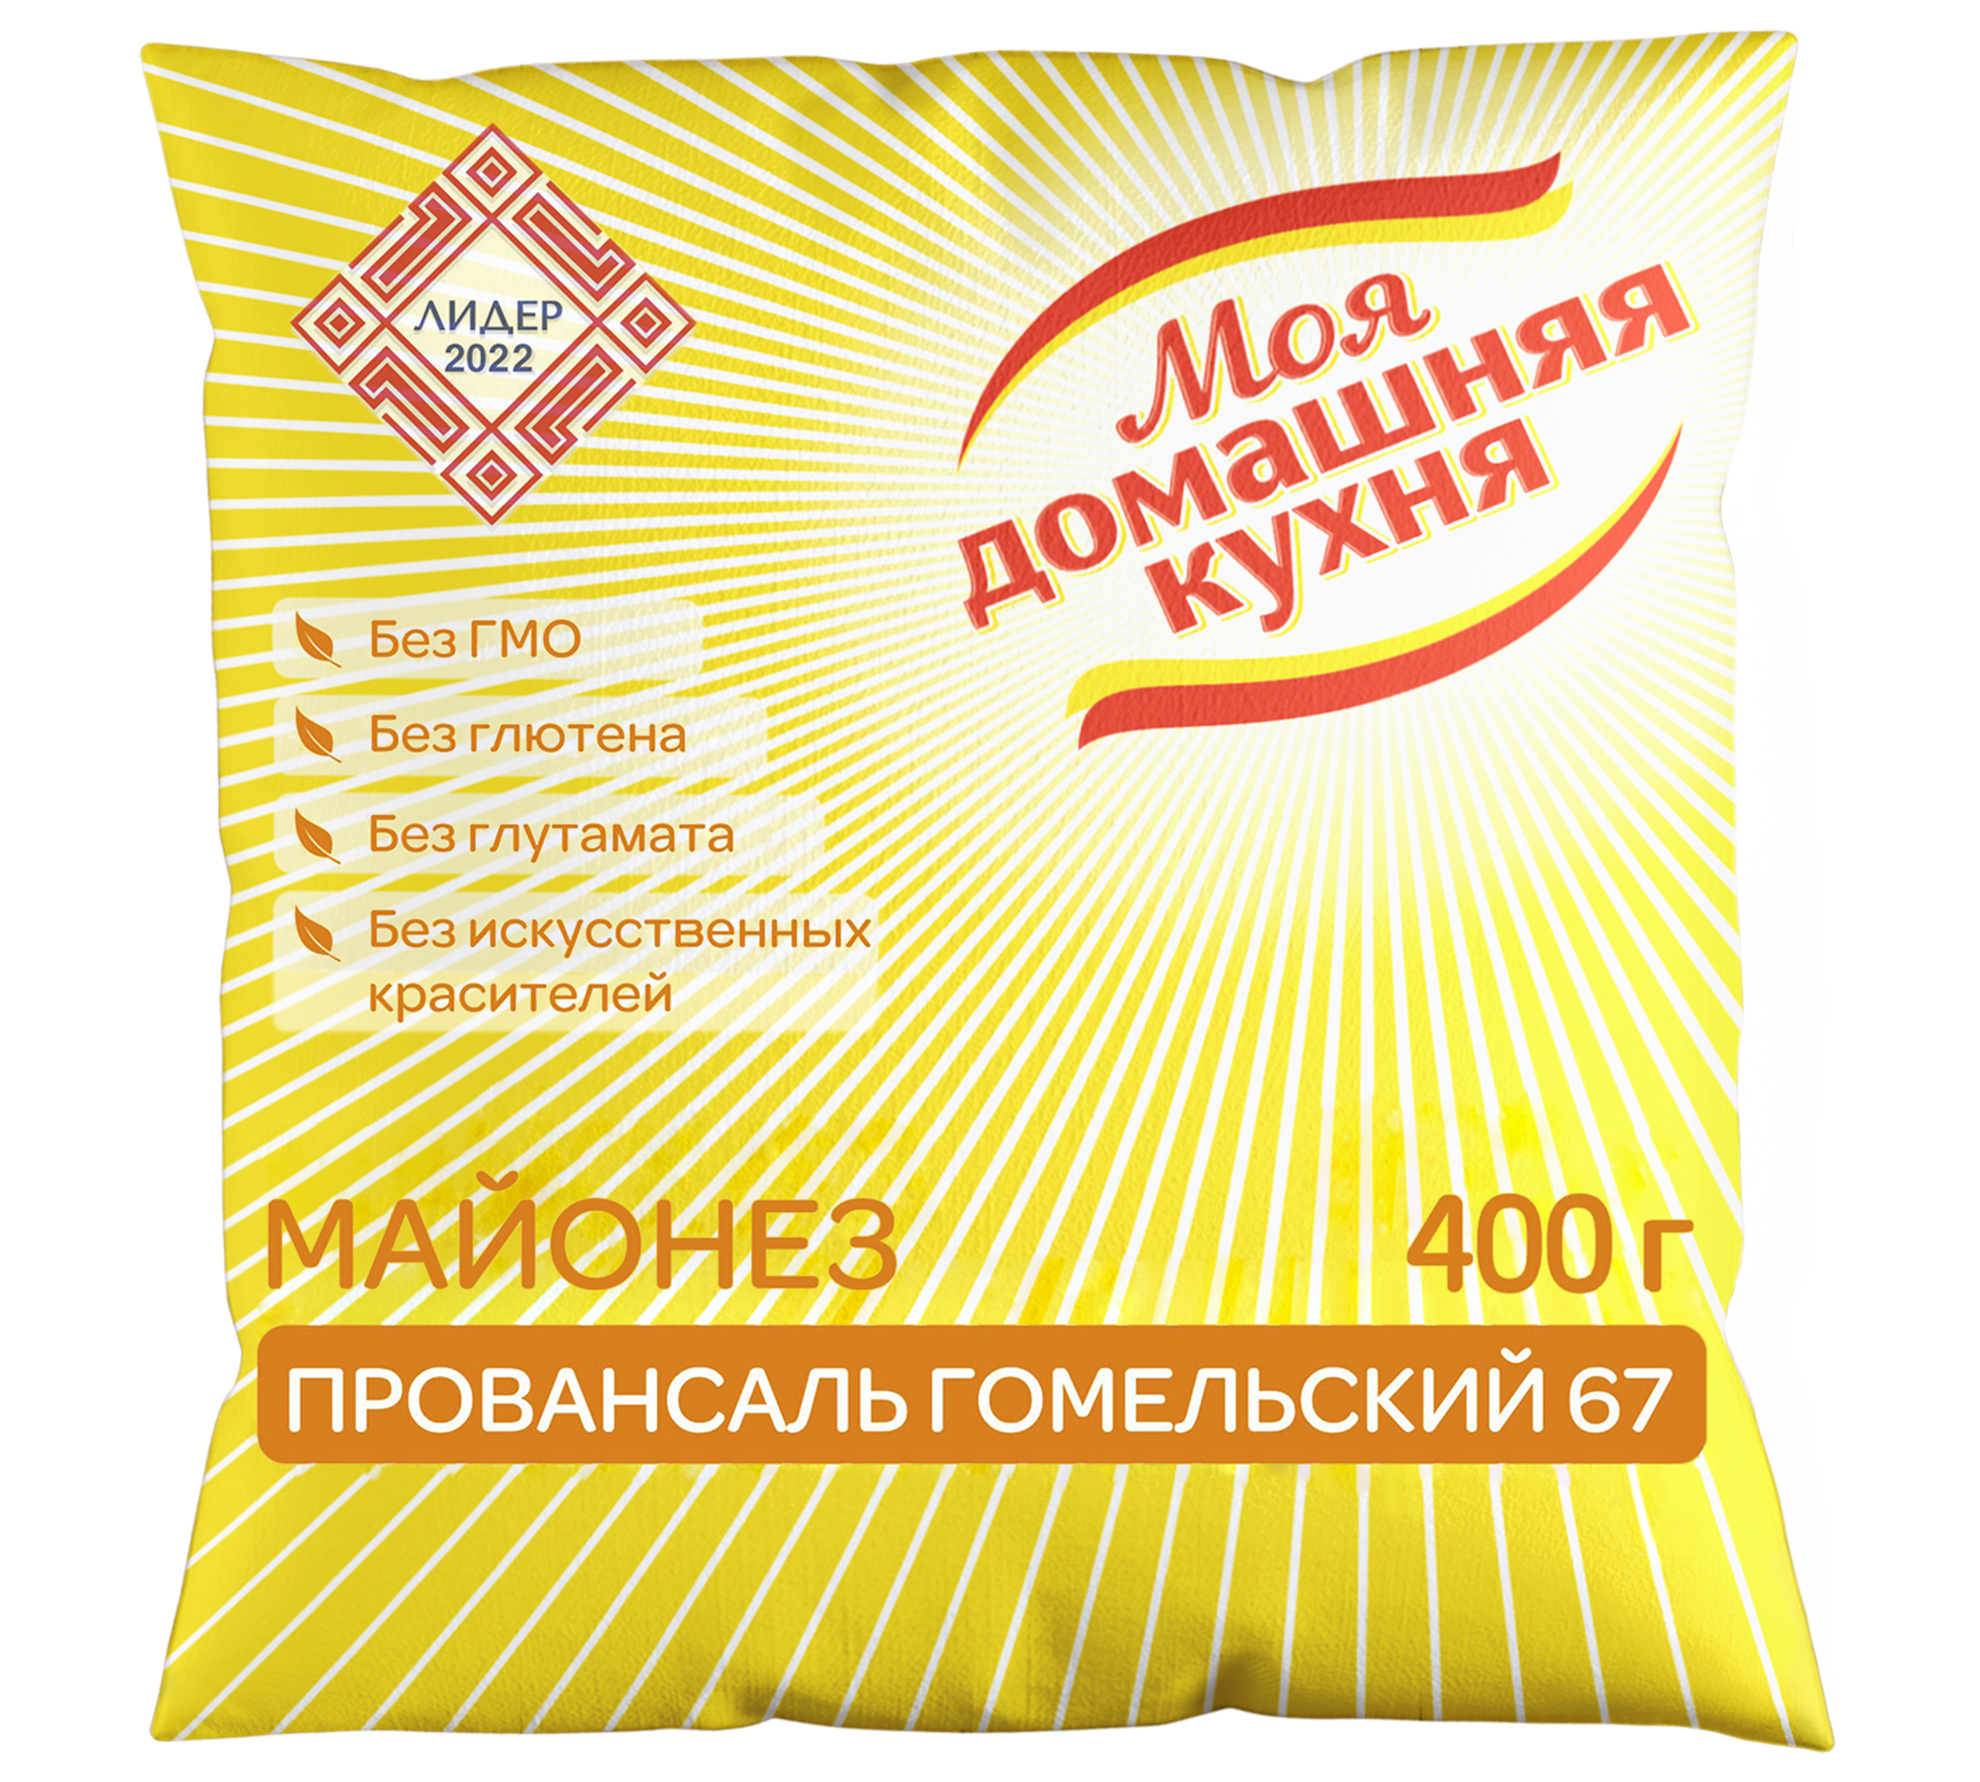 蛋黄酱Provansal Gomelsky 67从制造商处批发。